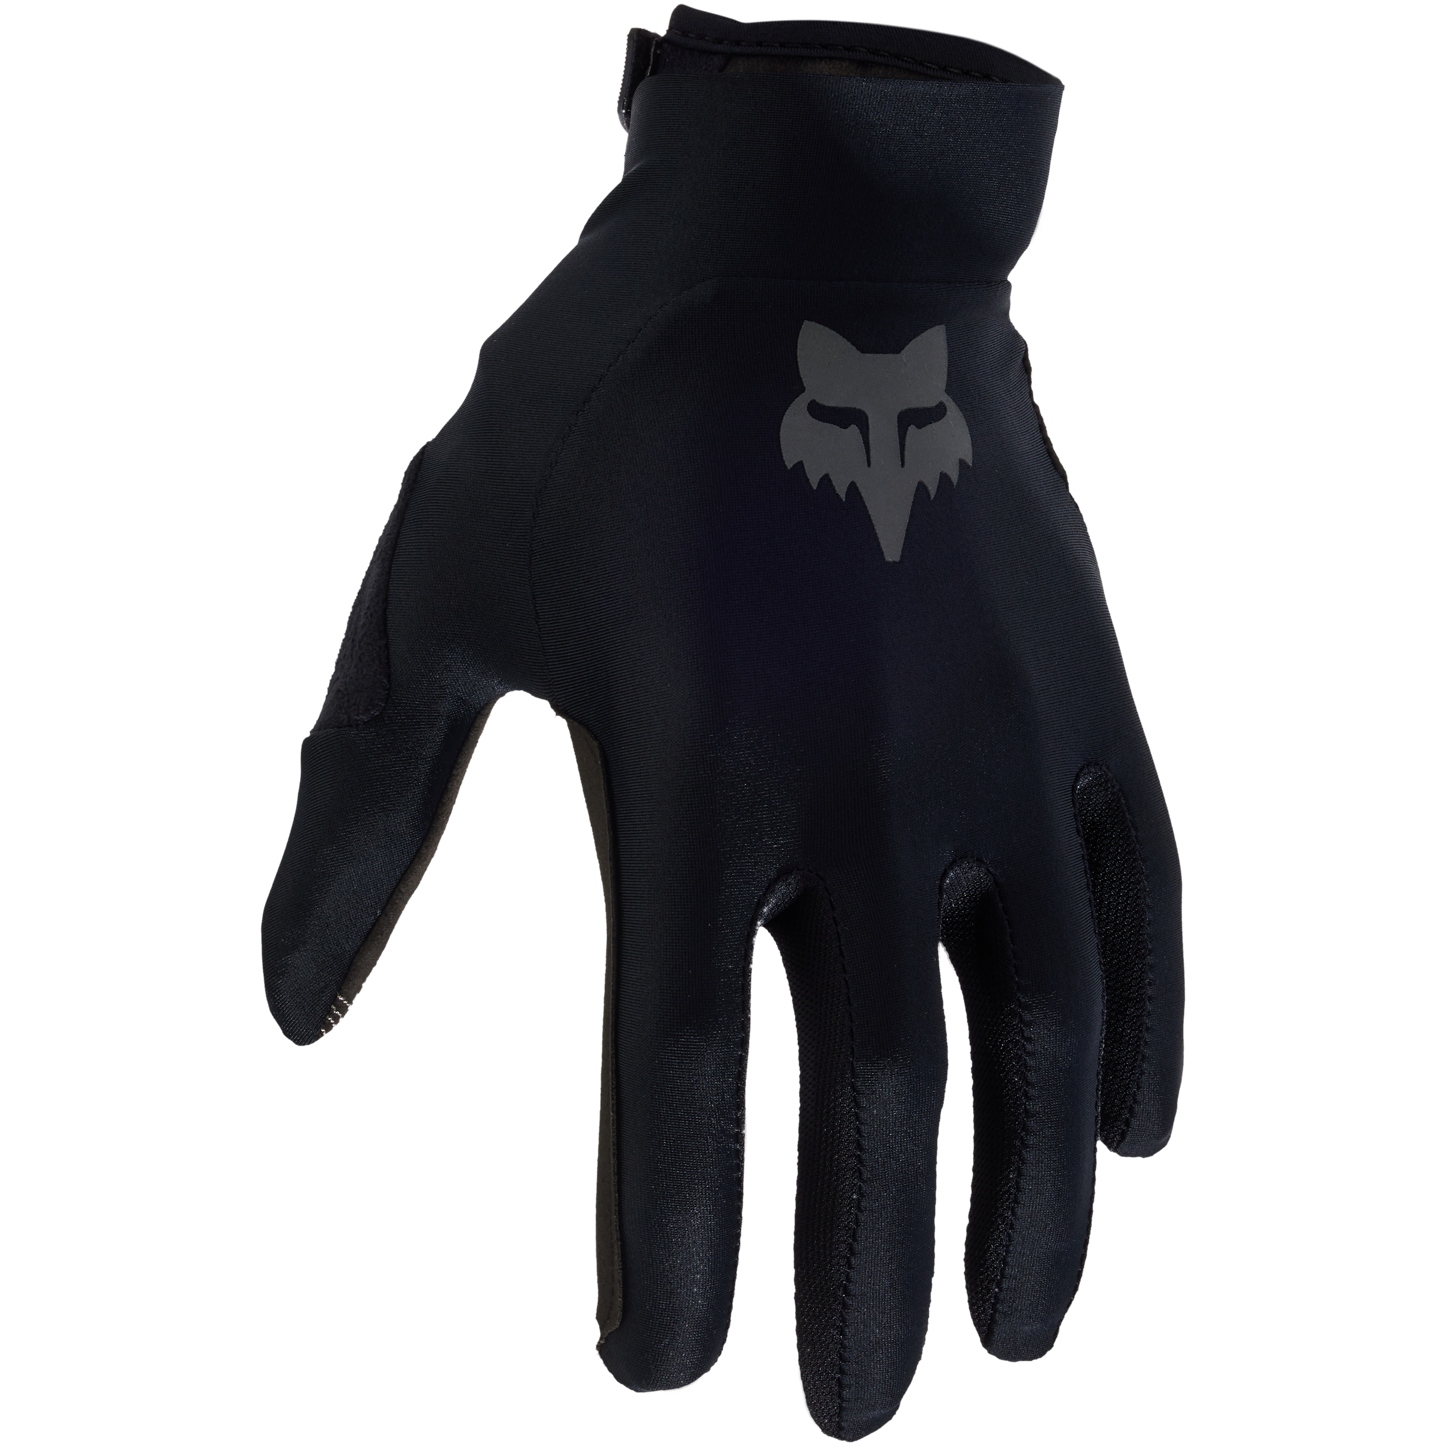 Produktbild von FOX Flexair MTB Vollfinger-Handschuhe Herren - schwarz